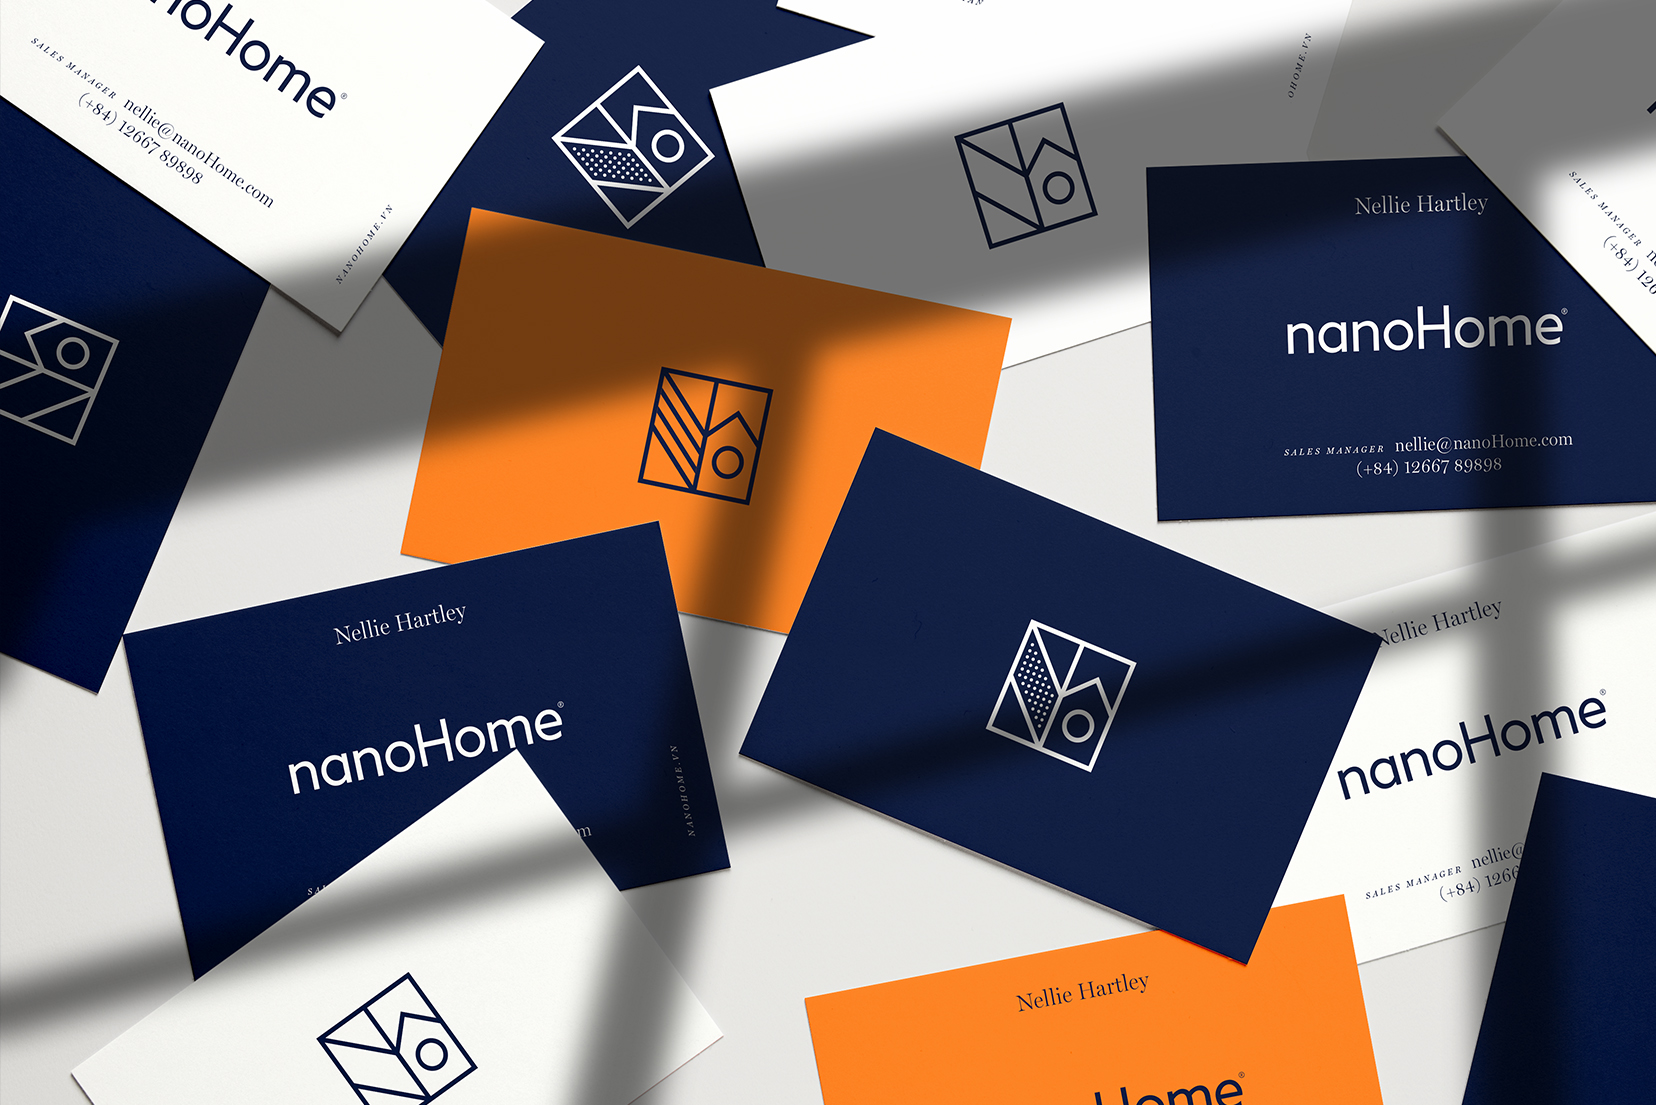 nanoHome business cards